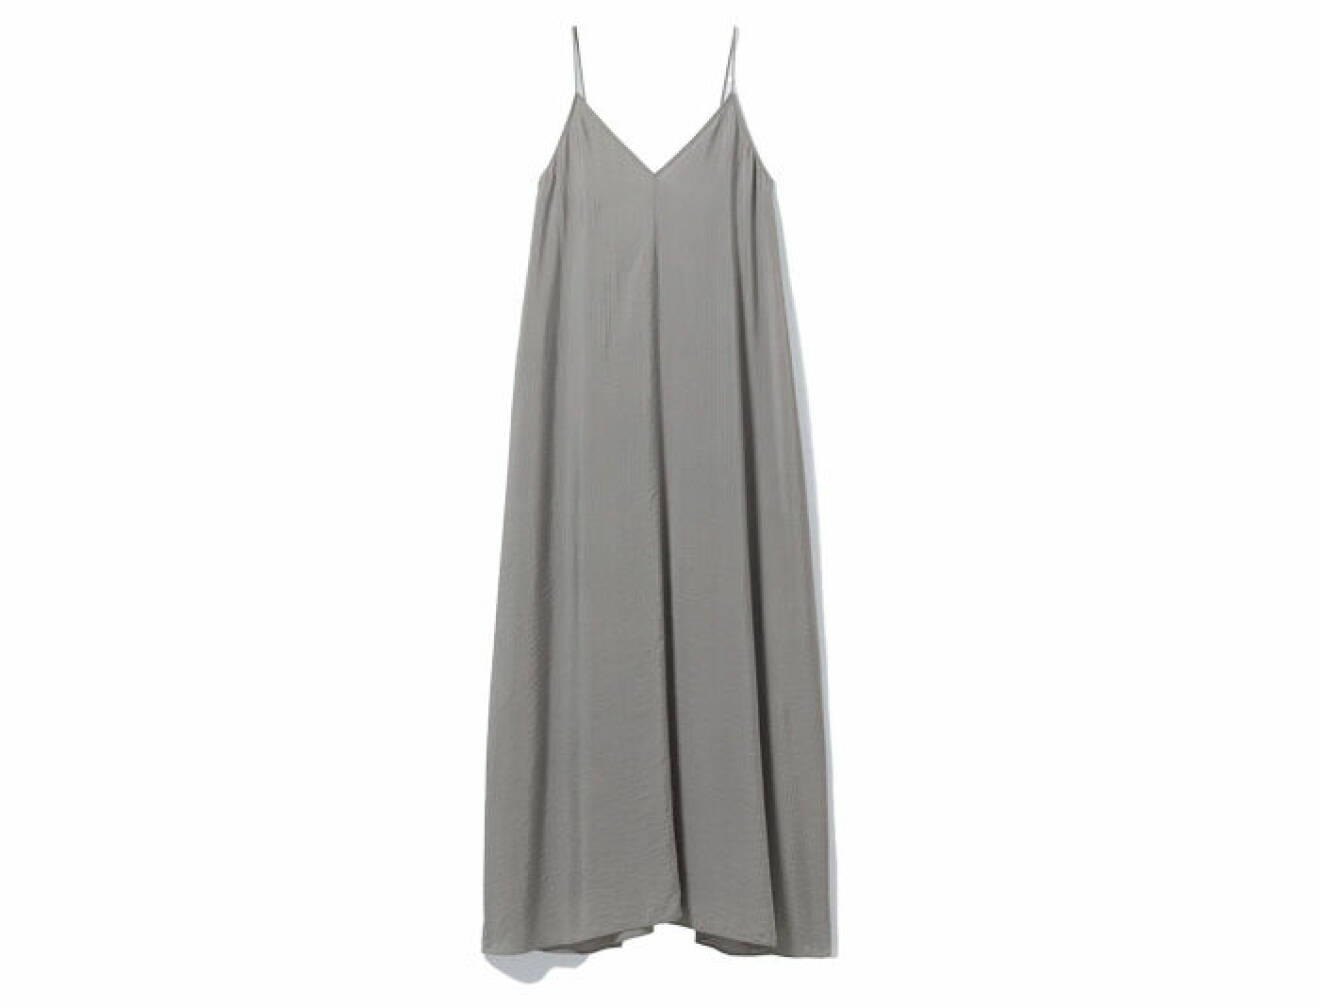 grå klänning i lång modell med luftig passform gjord i viskos från Weekday